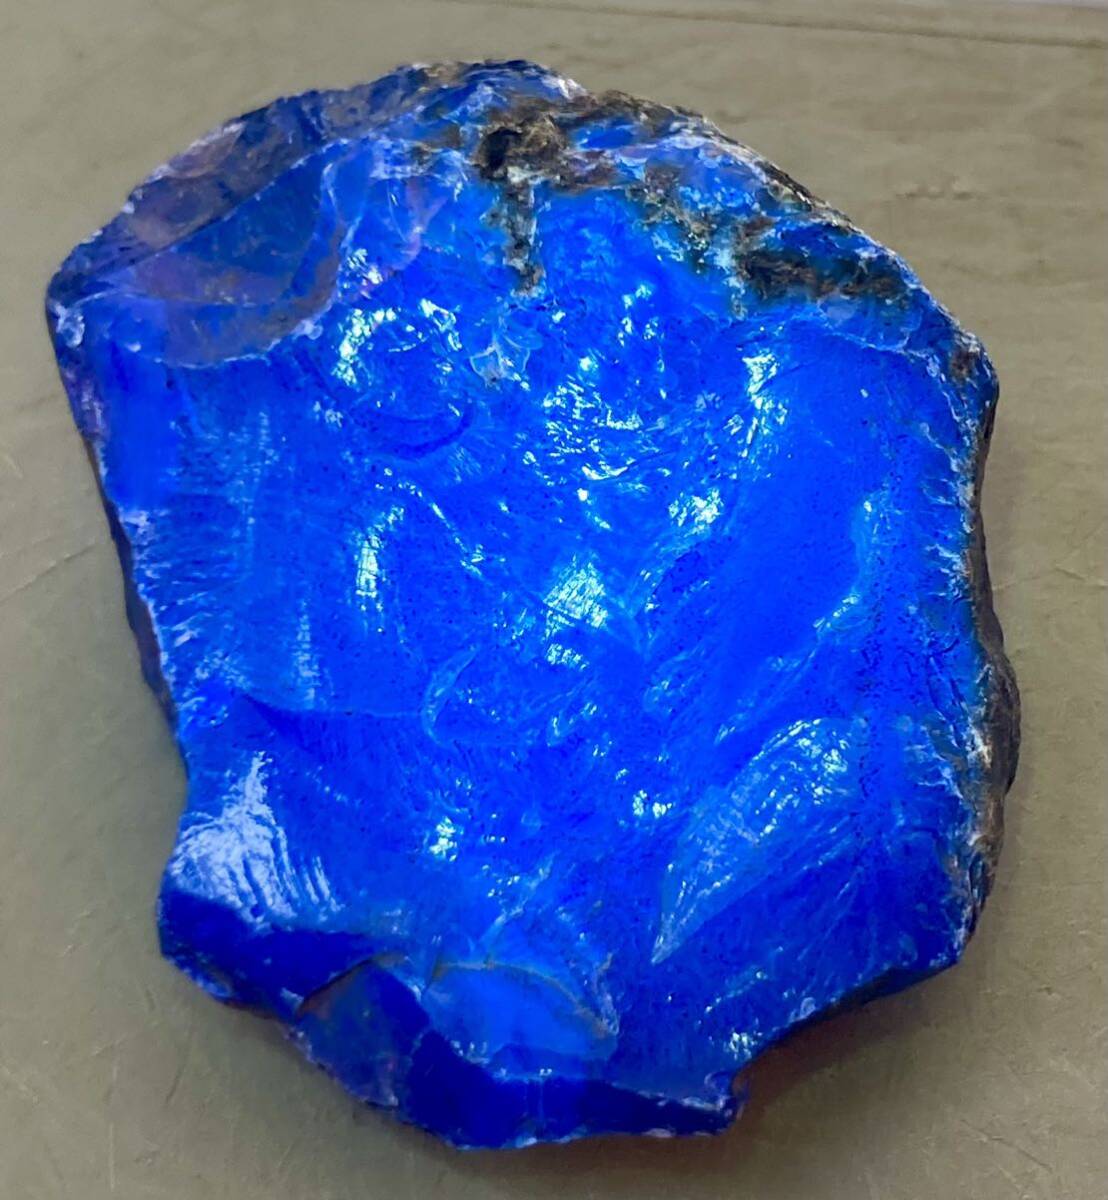  Indonesia sma тигр остров производство натуральный голубой янтарь необогащённая руда 36.46g красивый ^ ^